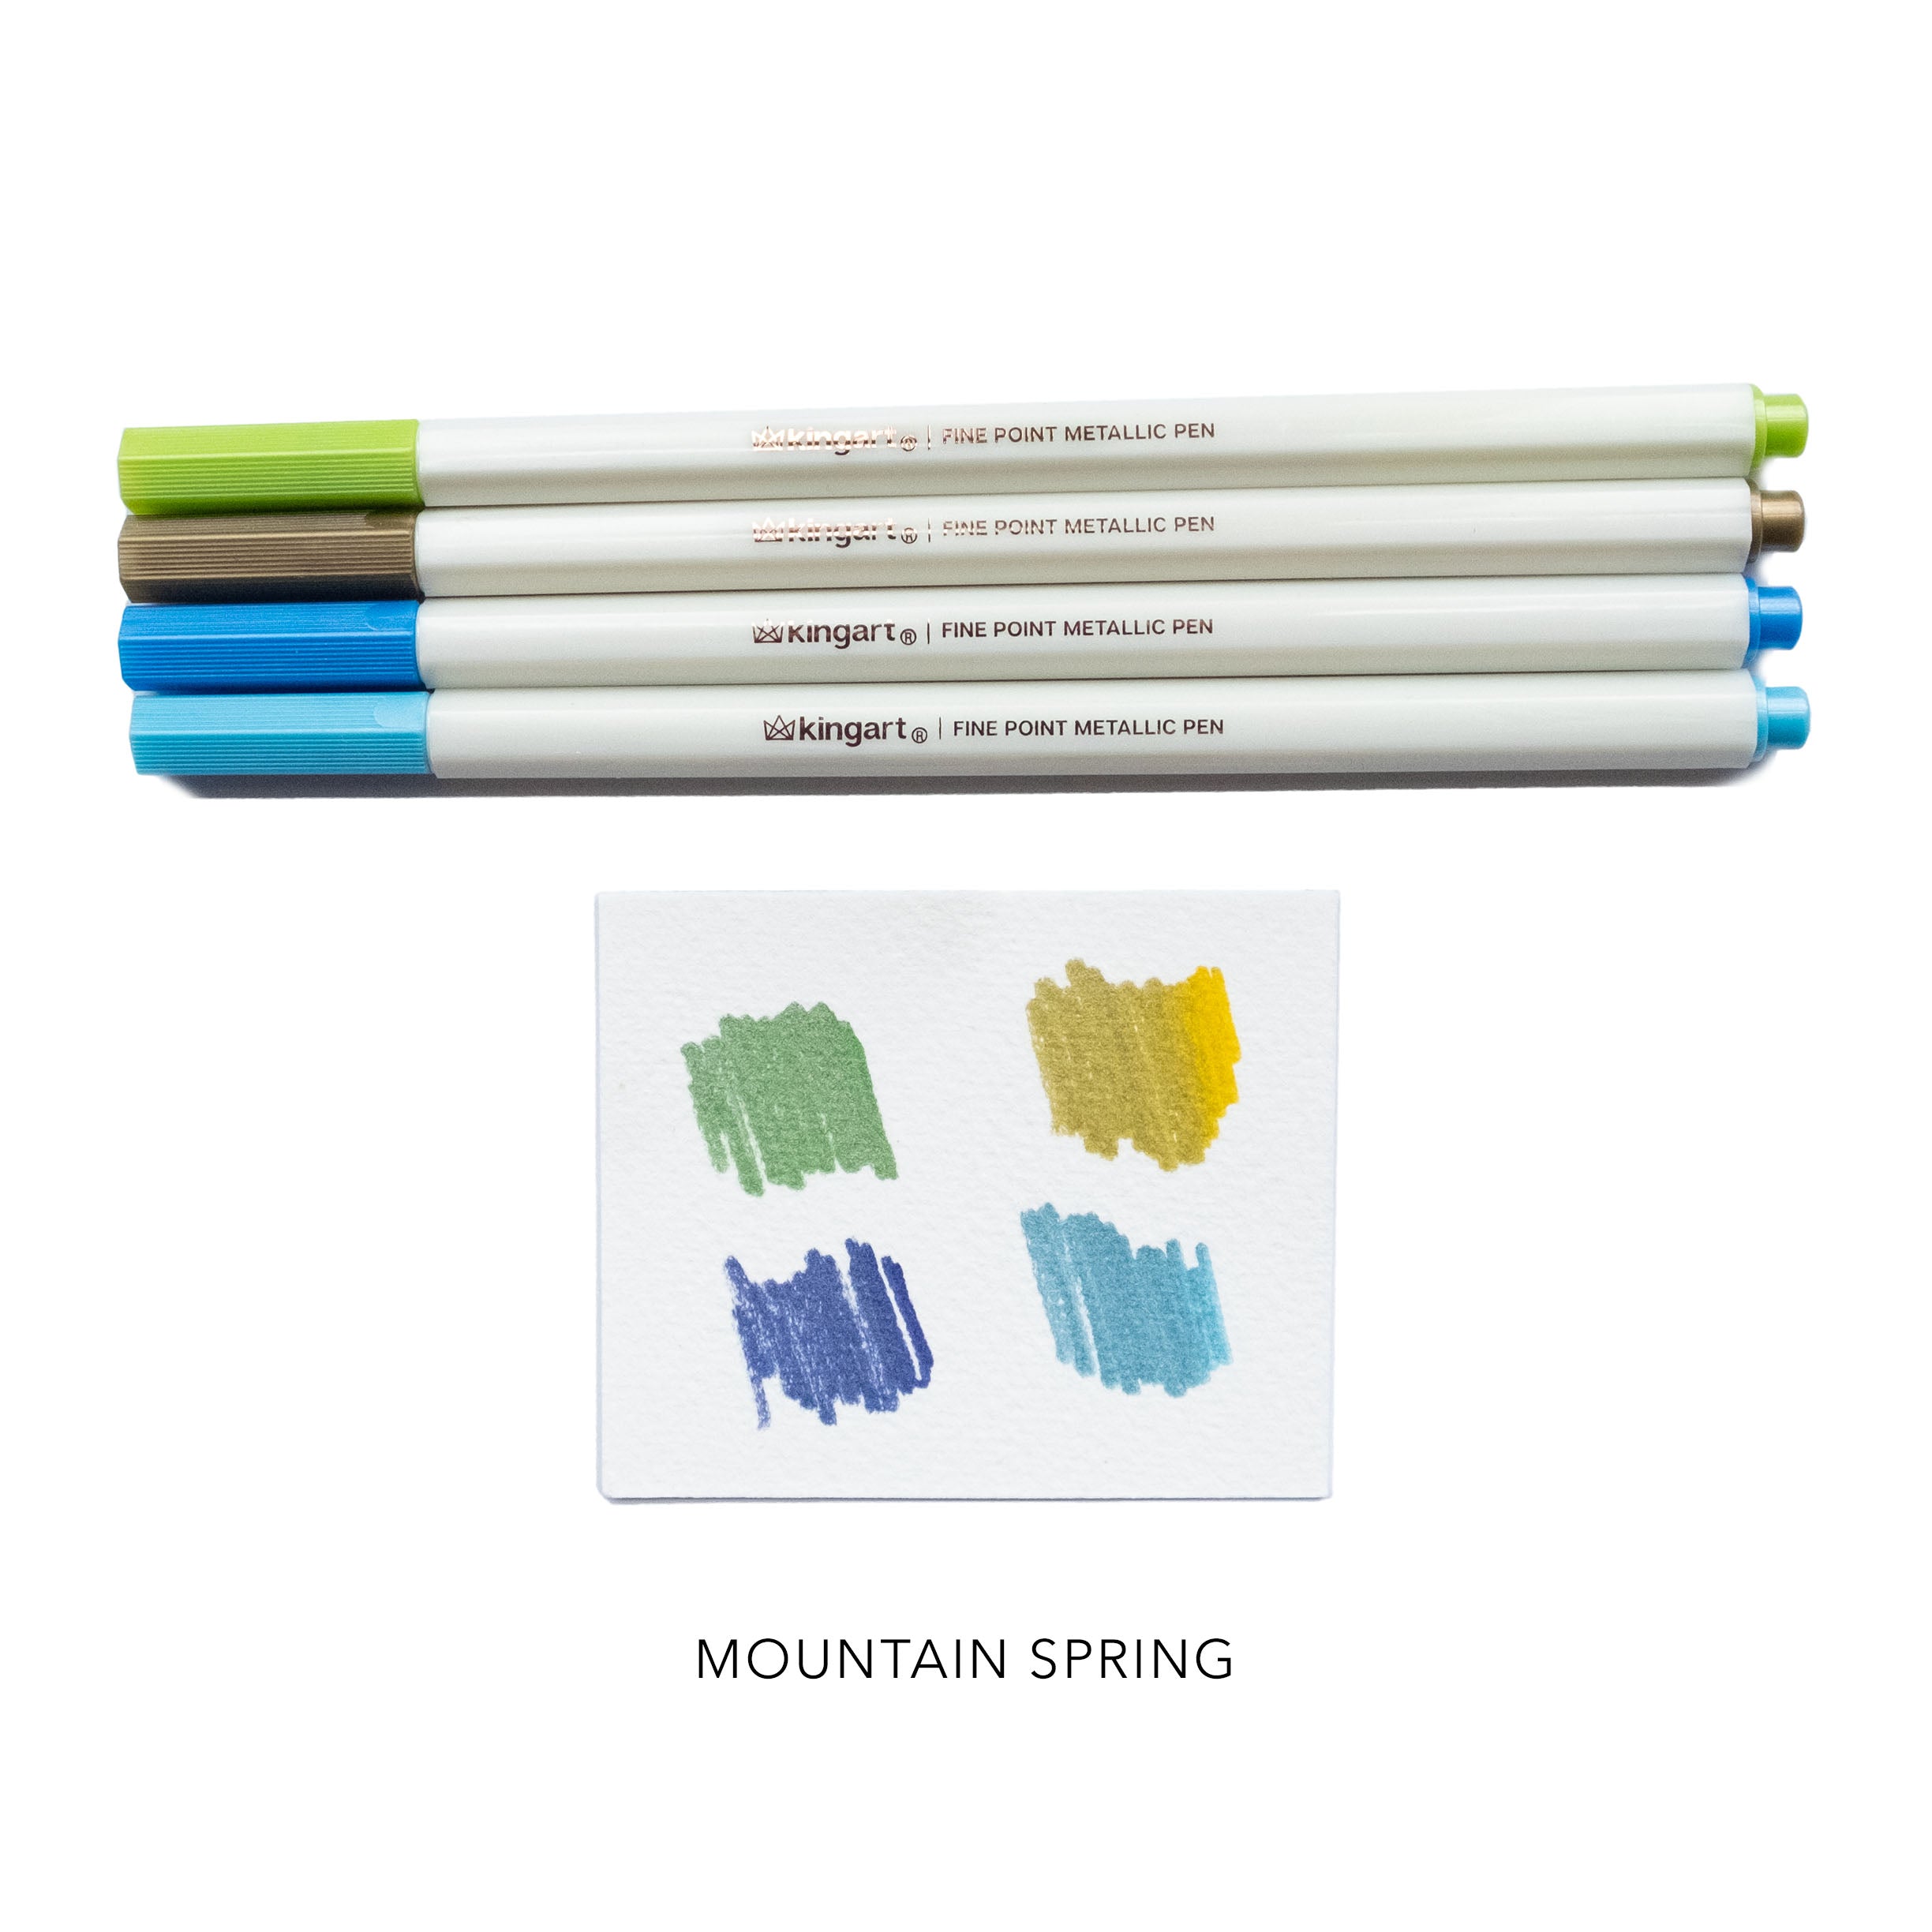 Kingart Pro Coloring Brush Pen Sets